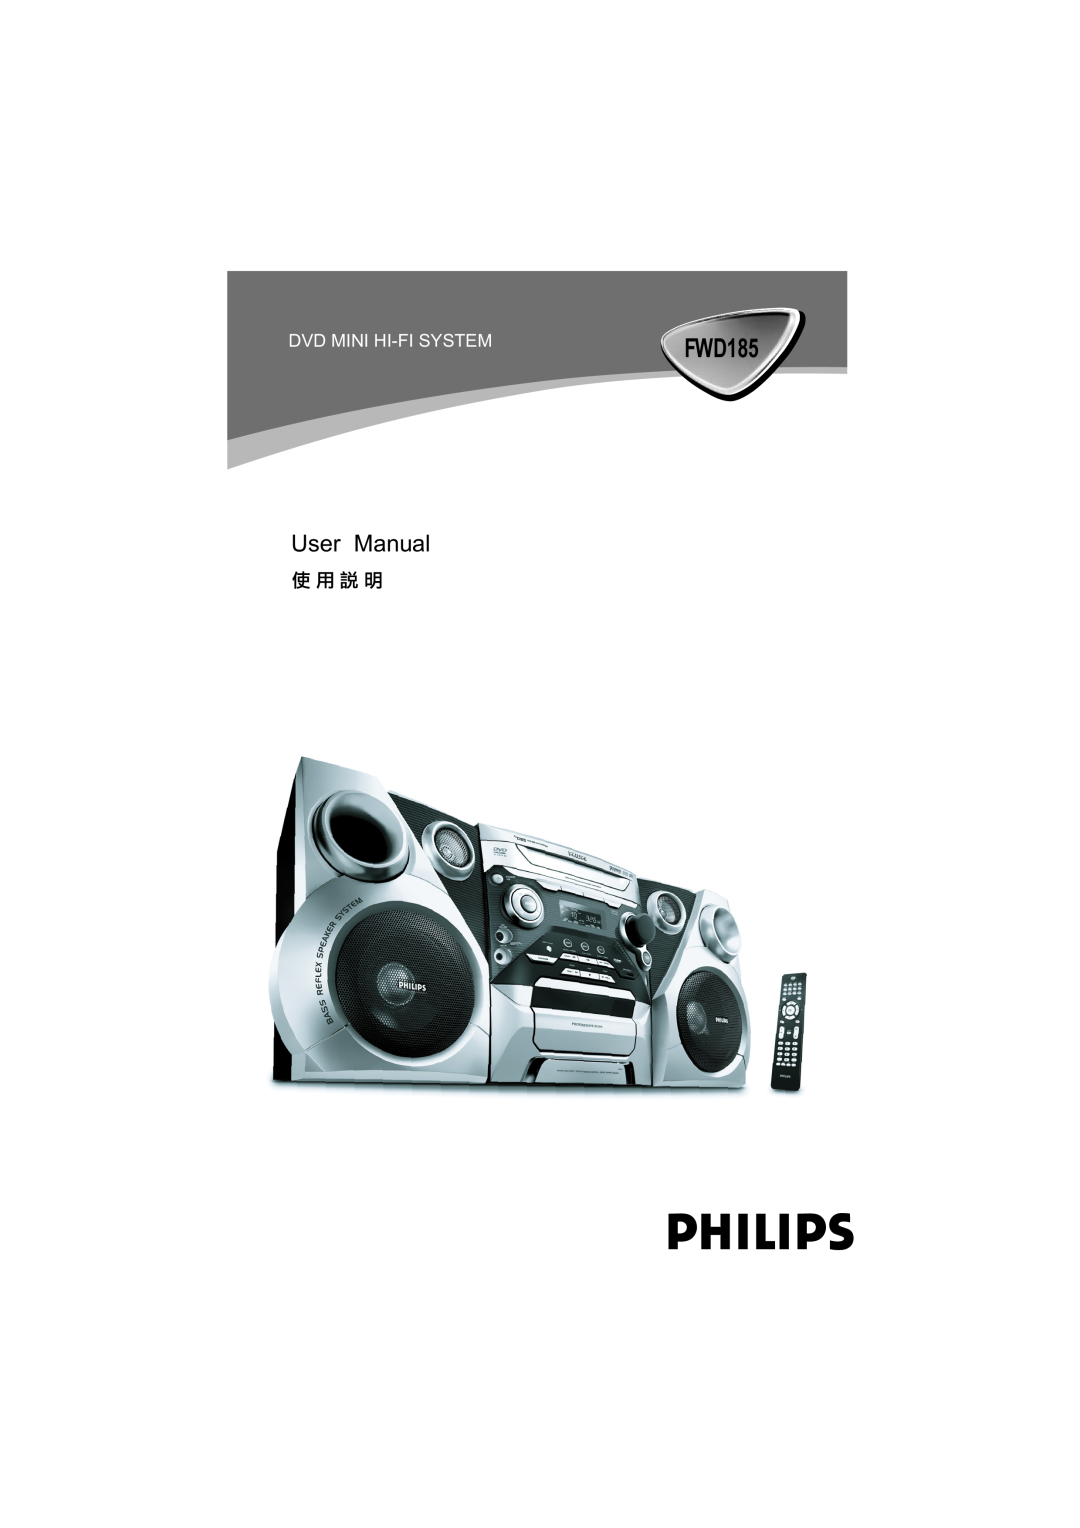 Philips FWD185 user manual Dvd Mini Hi-Fisystem 